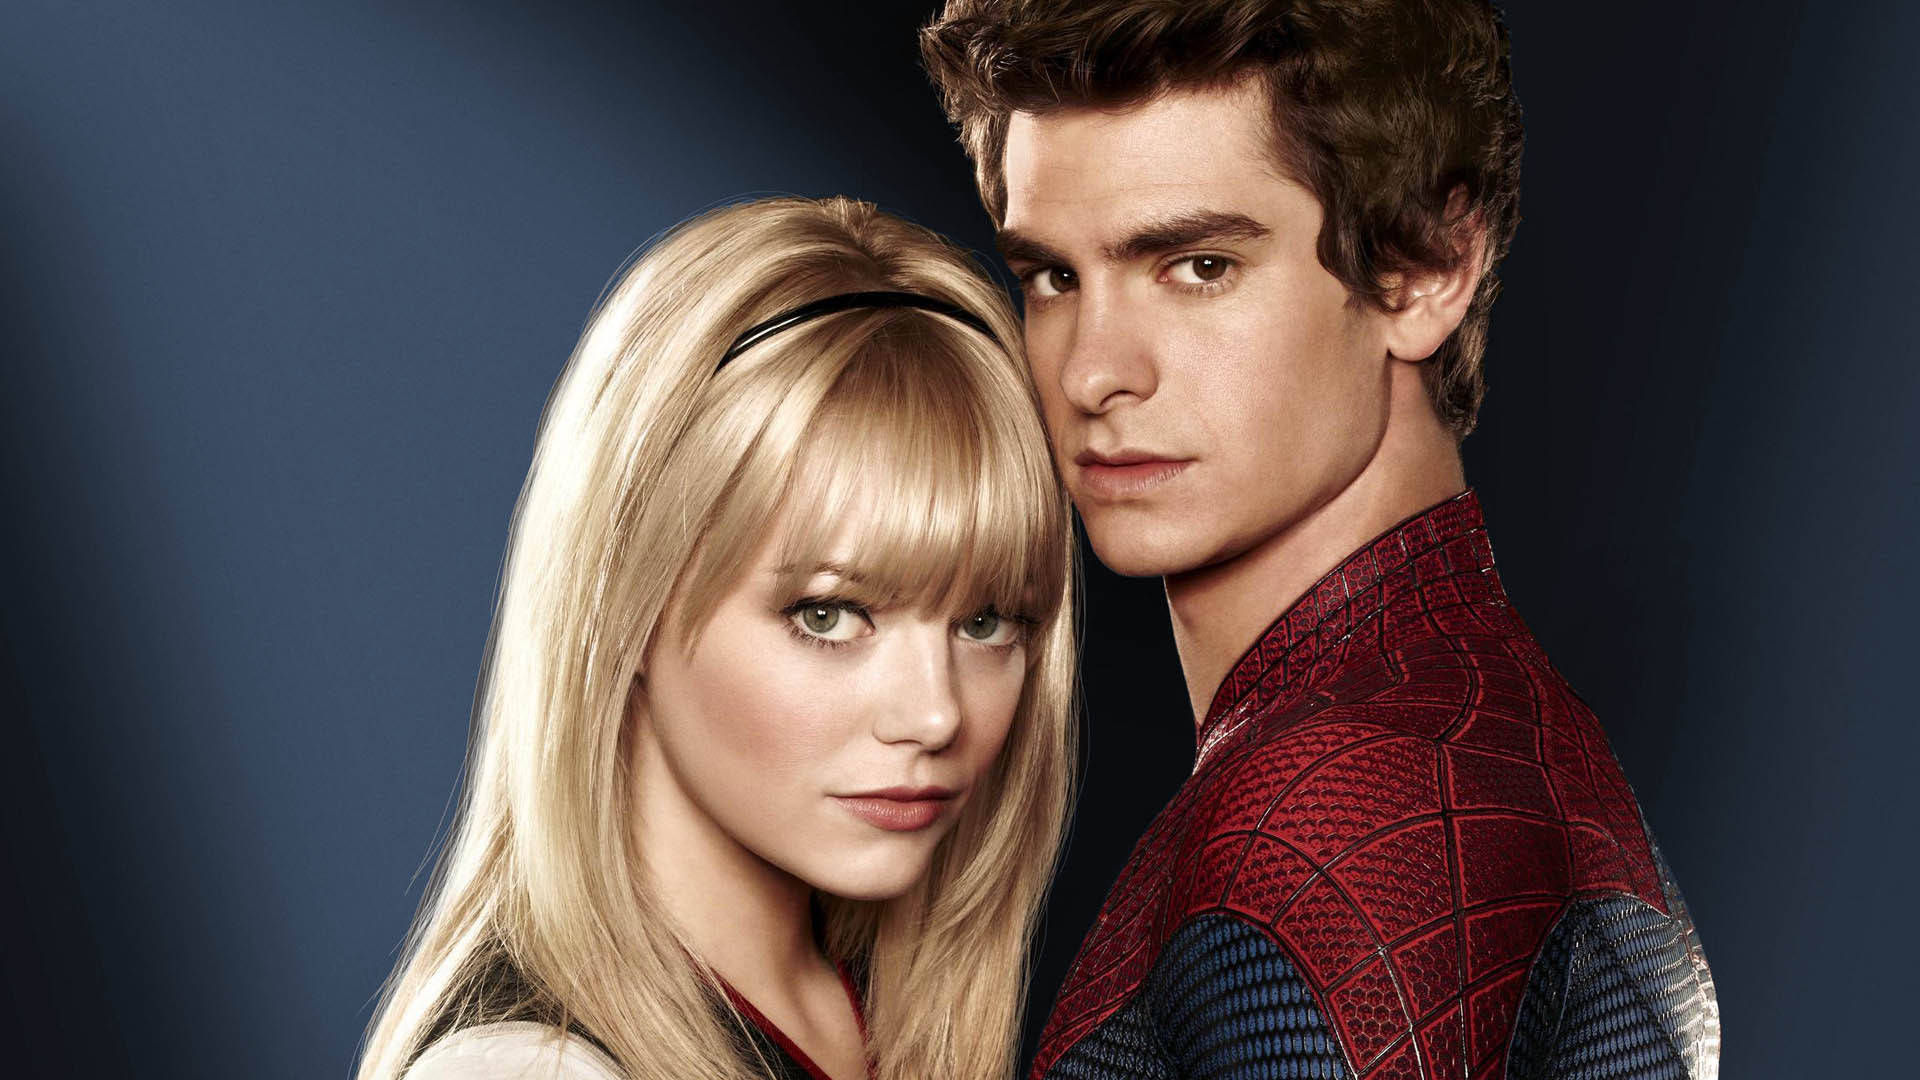 Andrew Garfield Spider-man Love Interest Background